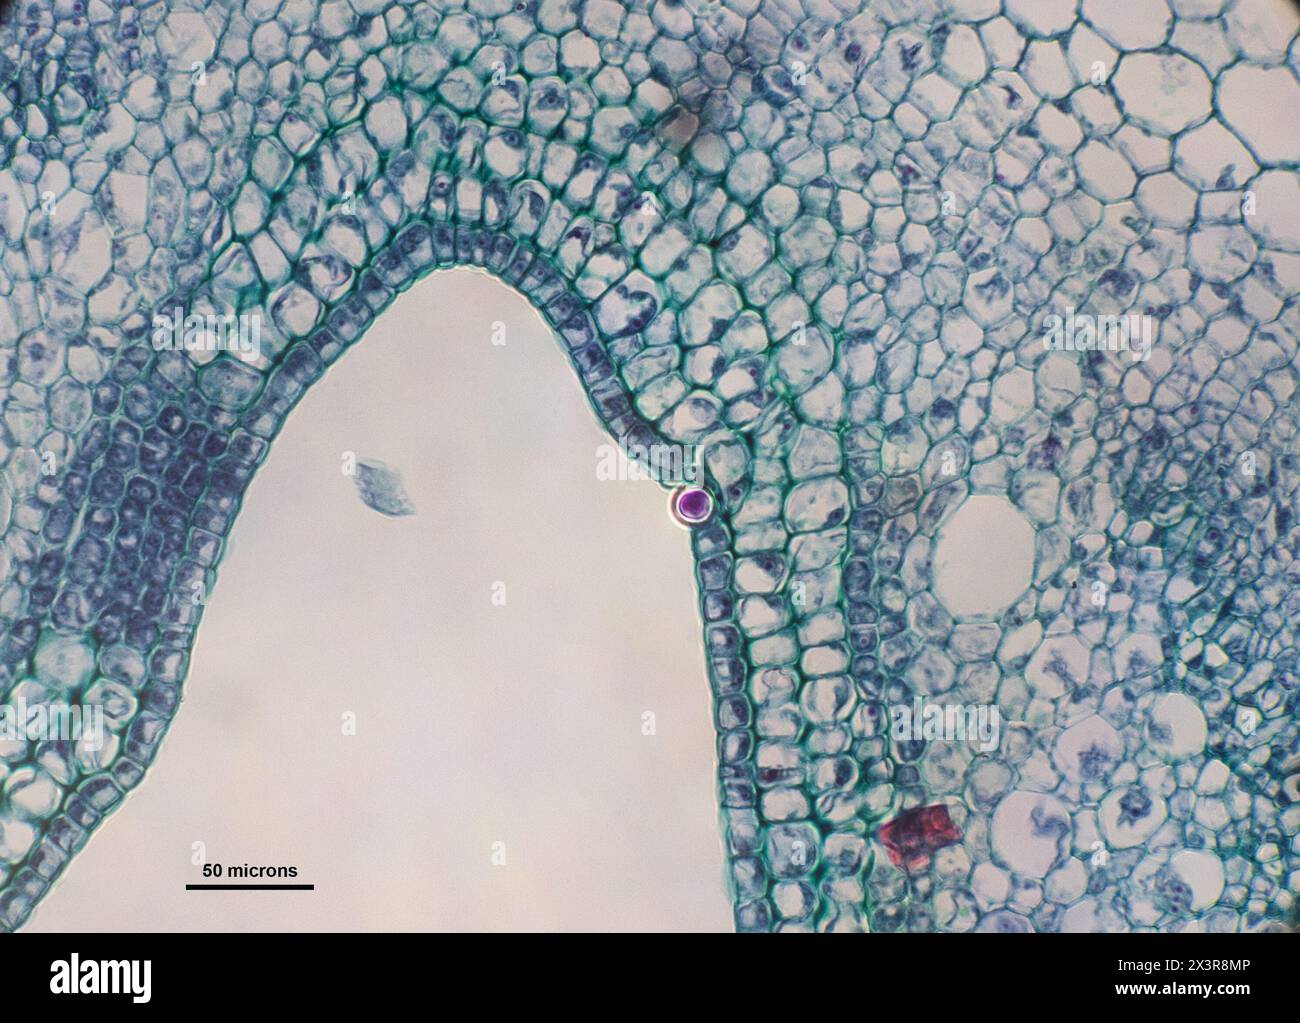 Querschnitt von Urtica-Zellen (Brennesseln) unter einem Mikroskop Stockfoto